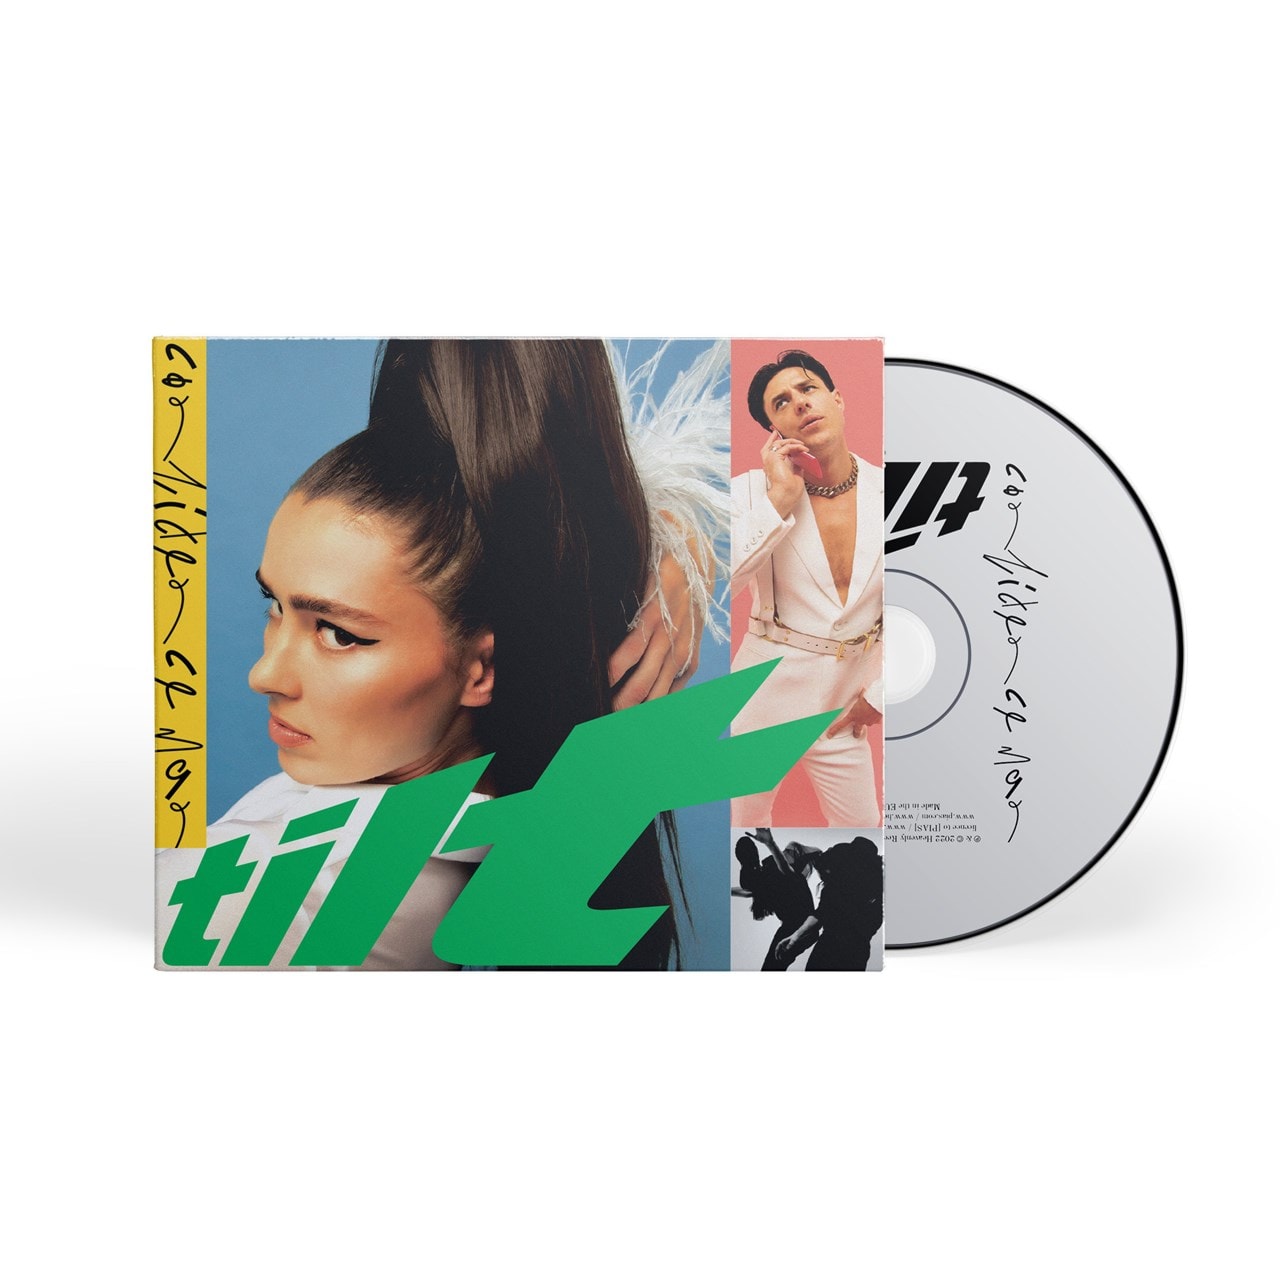 Tilt | CD Album | Free shipping over £20 | HMV Store